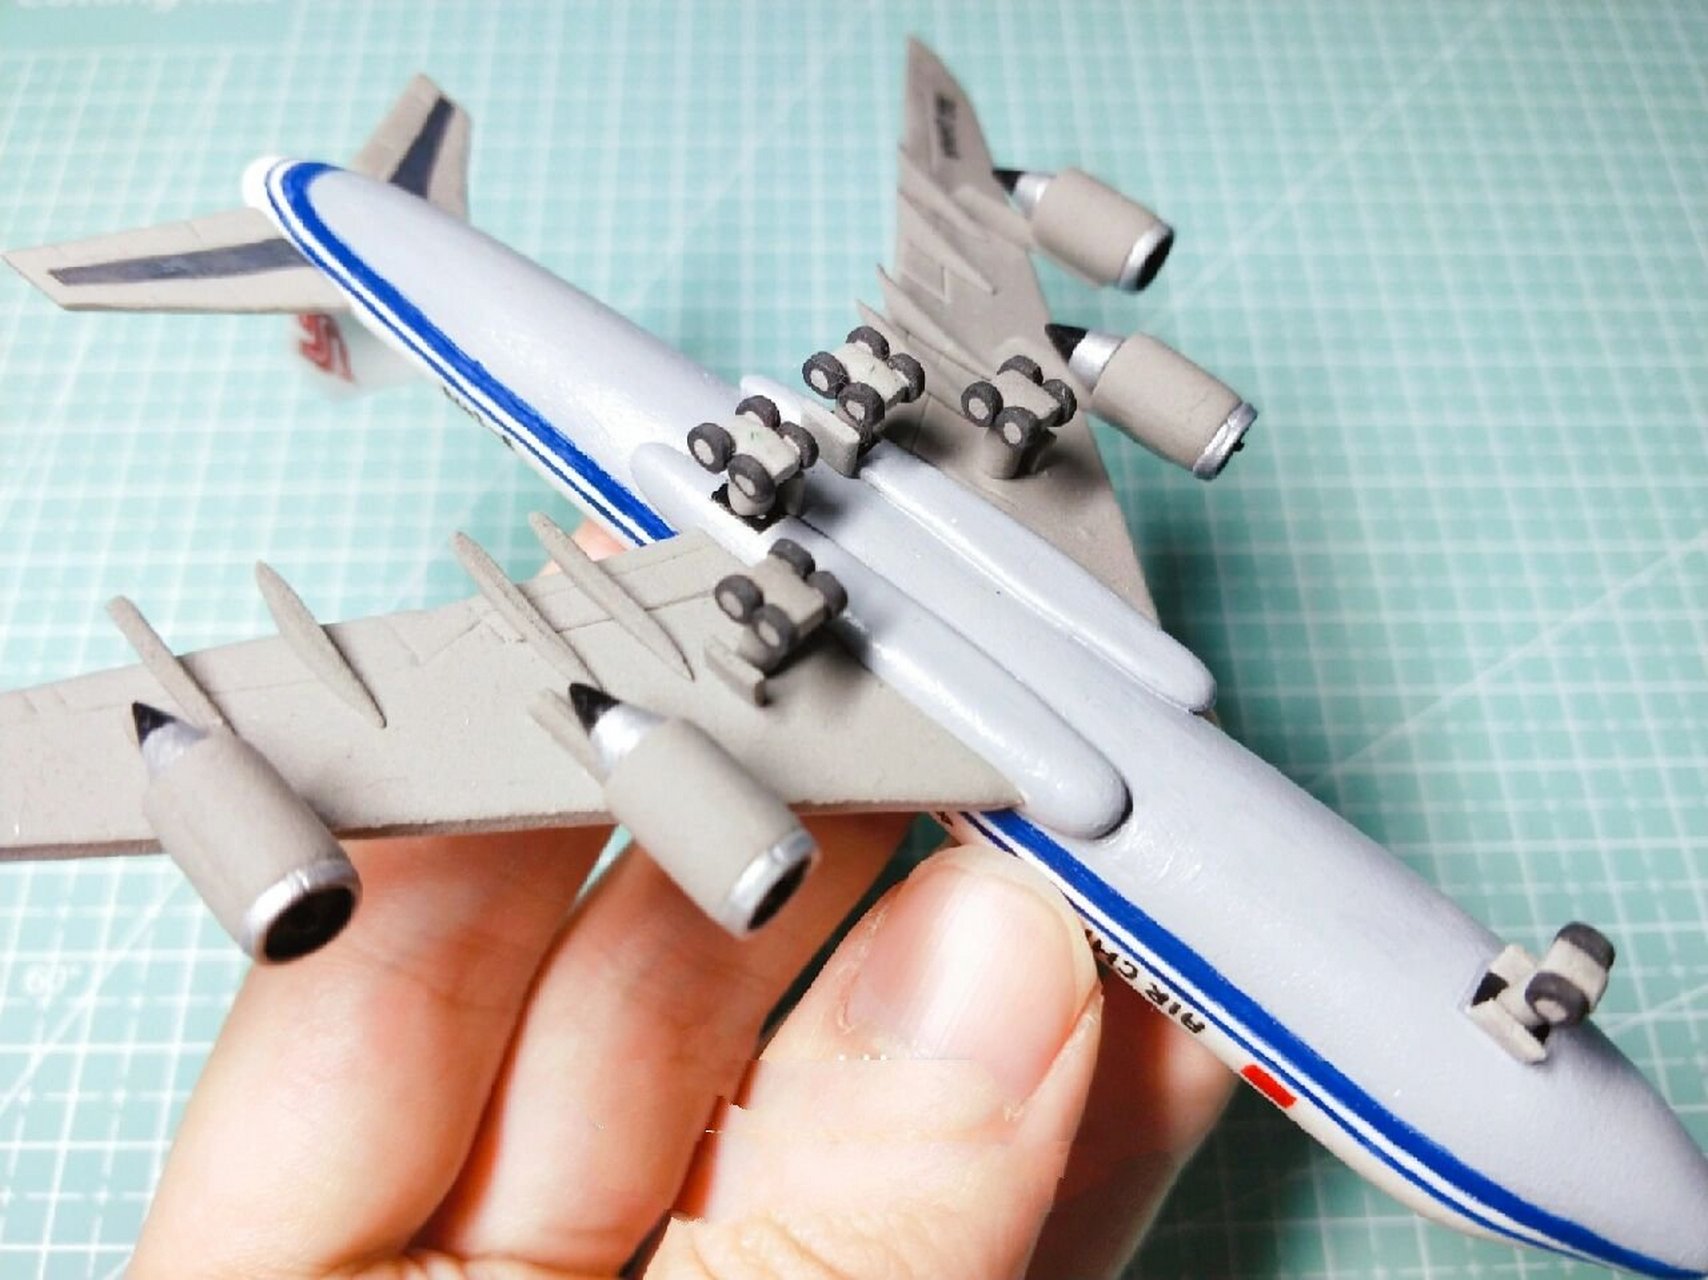 【超轻粘土】波音飞机手工教程 之前制作的波音飞机粘土模型,在